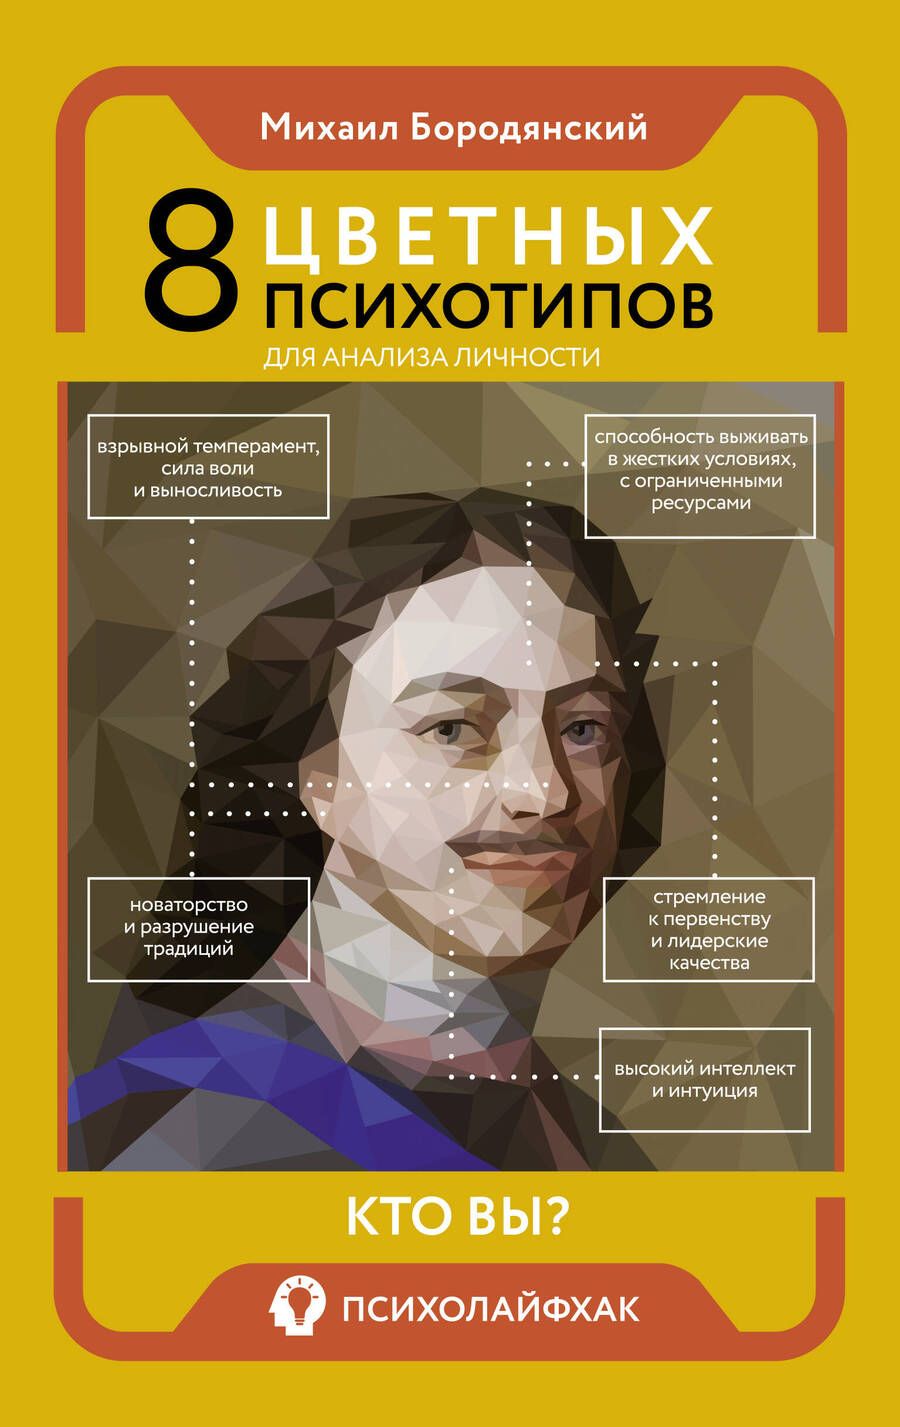 Обложка книги "Бородянский: 8 цветных психотипов для анализа личности"